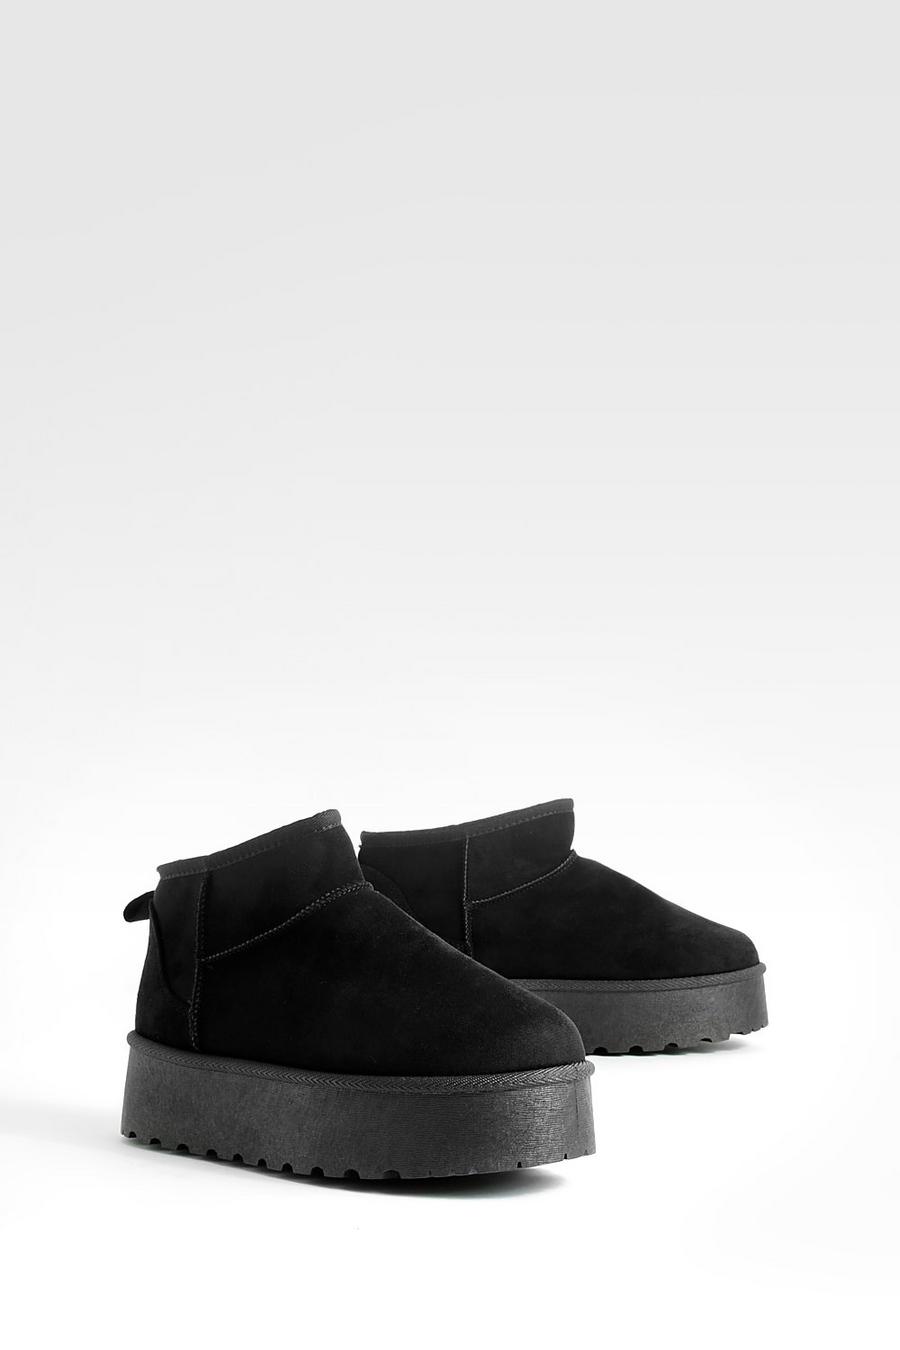 Black Platform Mini Cosy Boots     